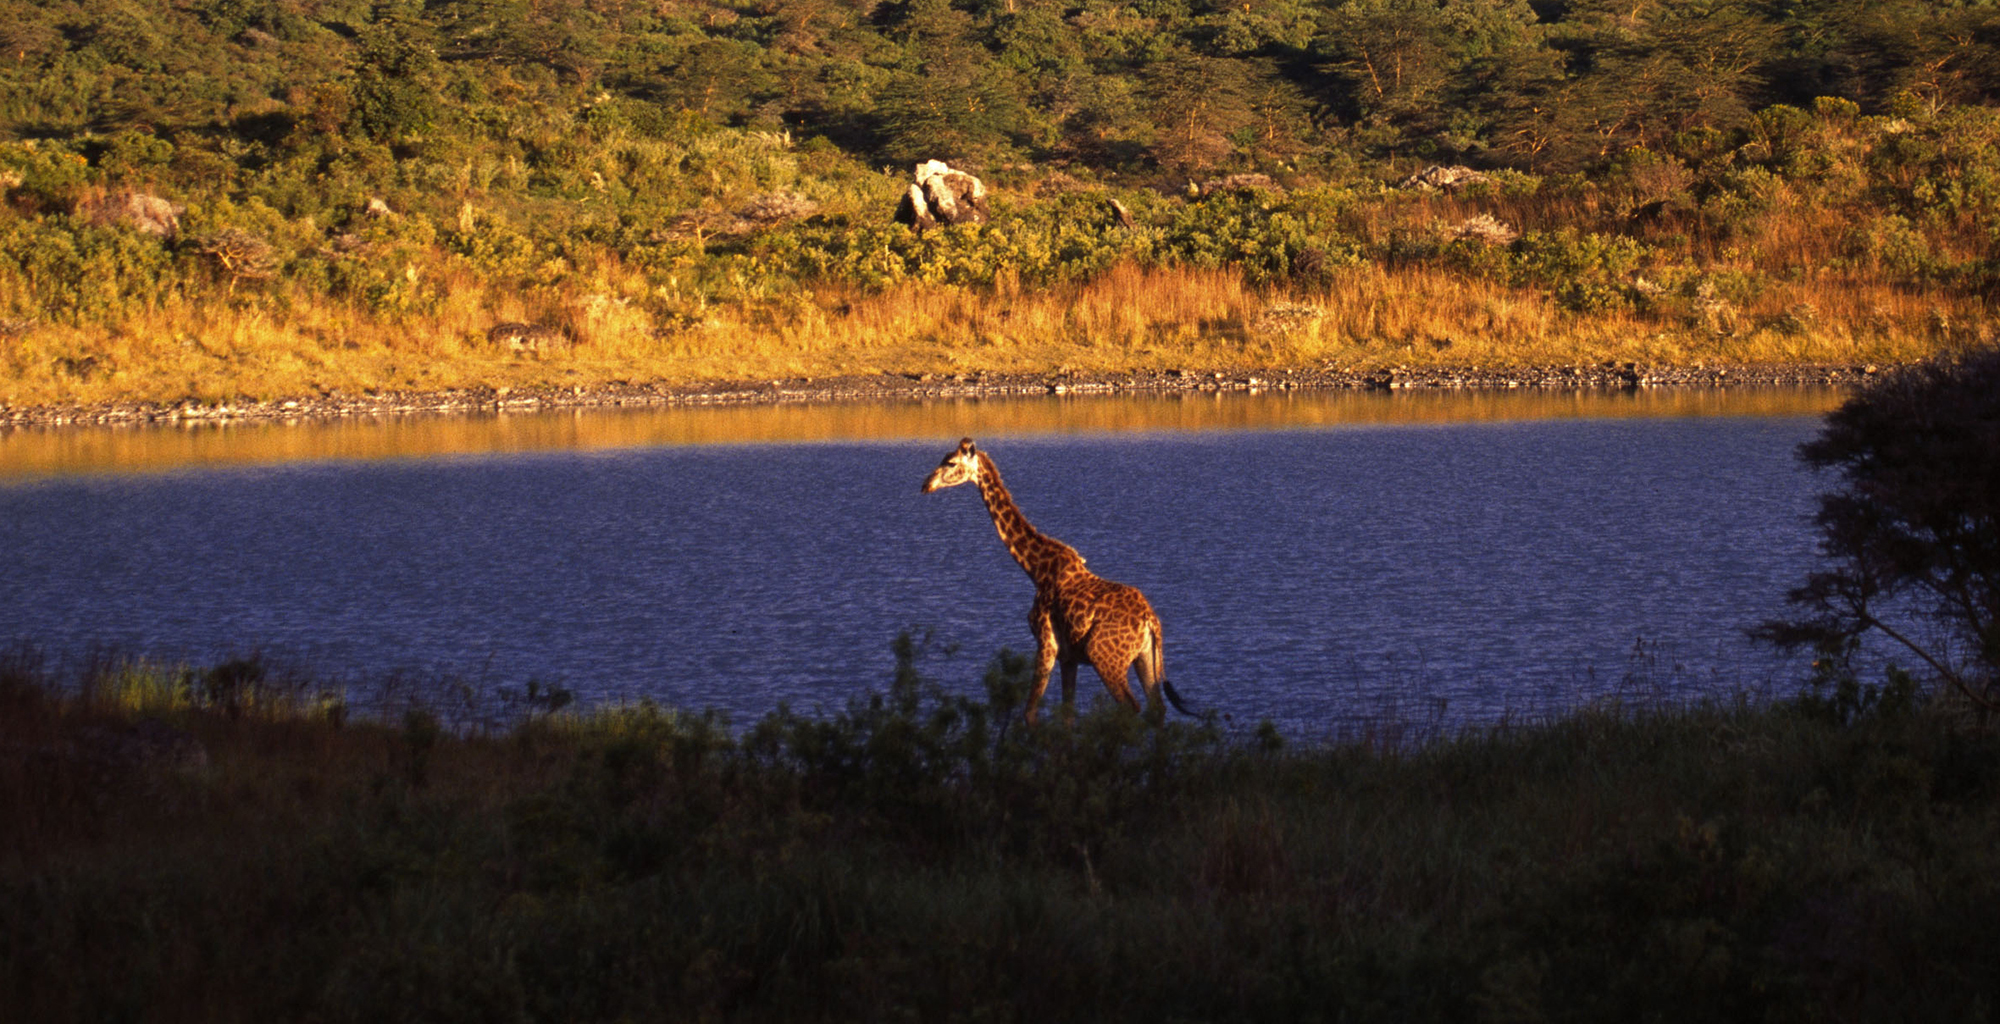 Tanzania-Arusha-Coffee-Lodge-Wildlife-Giraffe